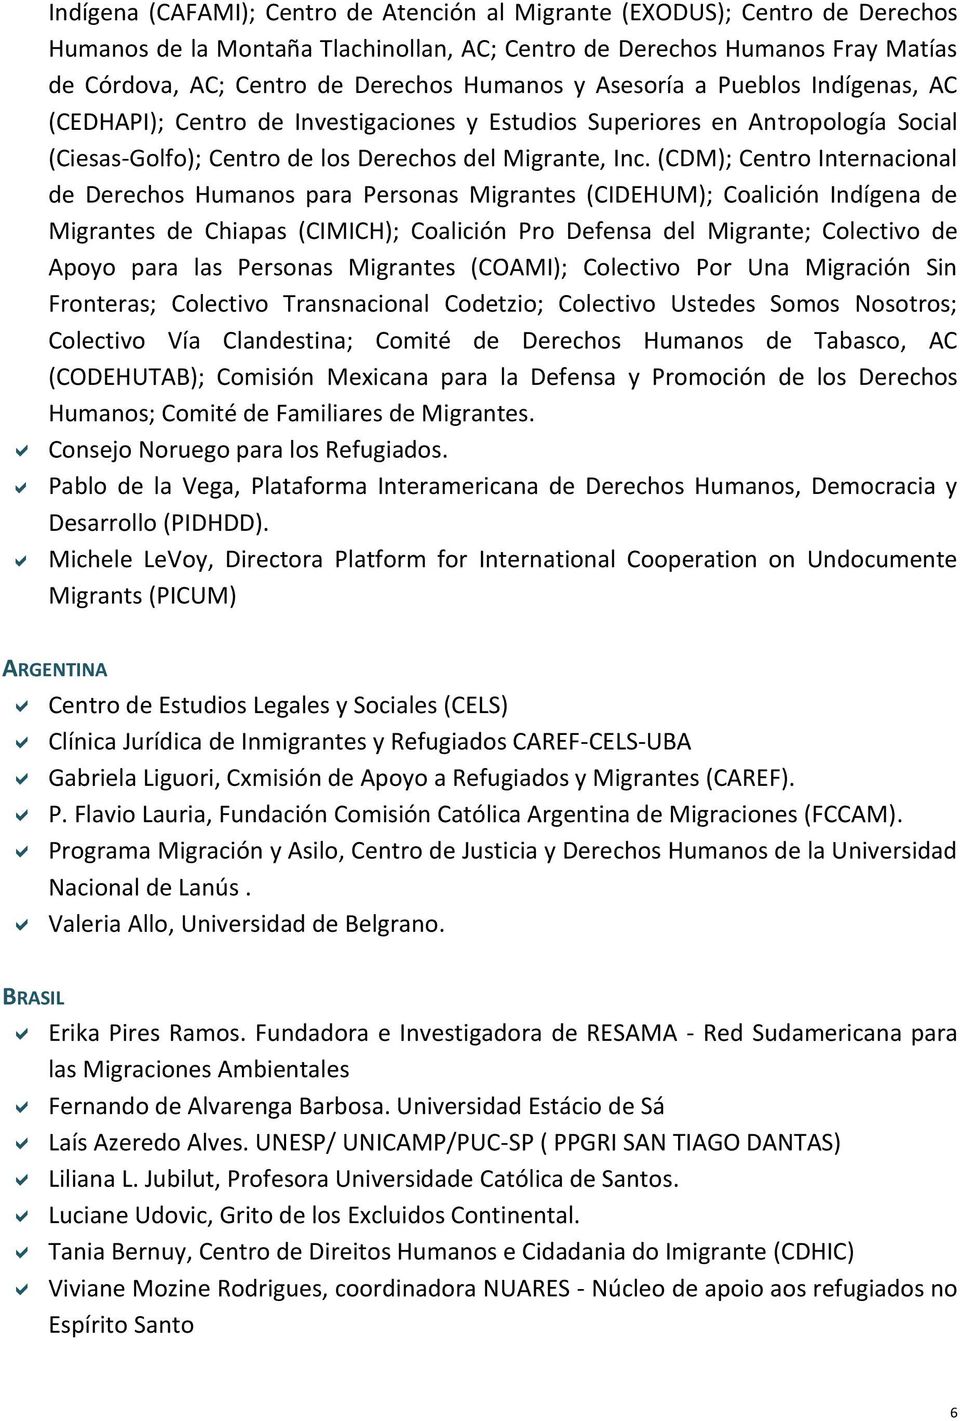 (CDM); Centro Internacional de Derechos Humanos para Personas Migrantes (CIDEHUM); Coalición Indígena de Migrantes de Chiapas (CIMICH); Coalición Pro Defensa del Migrante; Colectivo de Apoyo para las